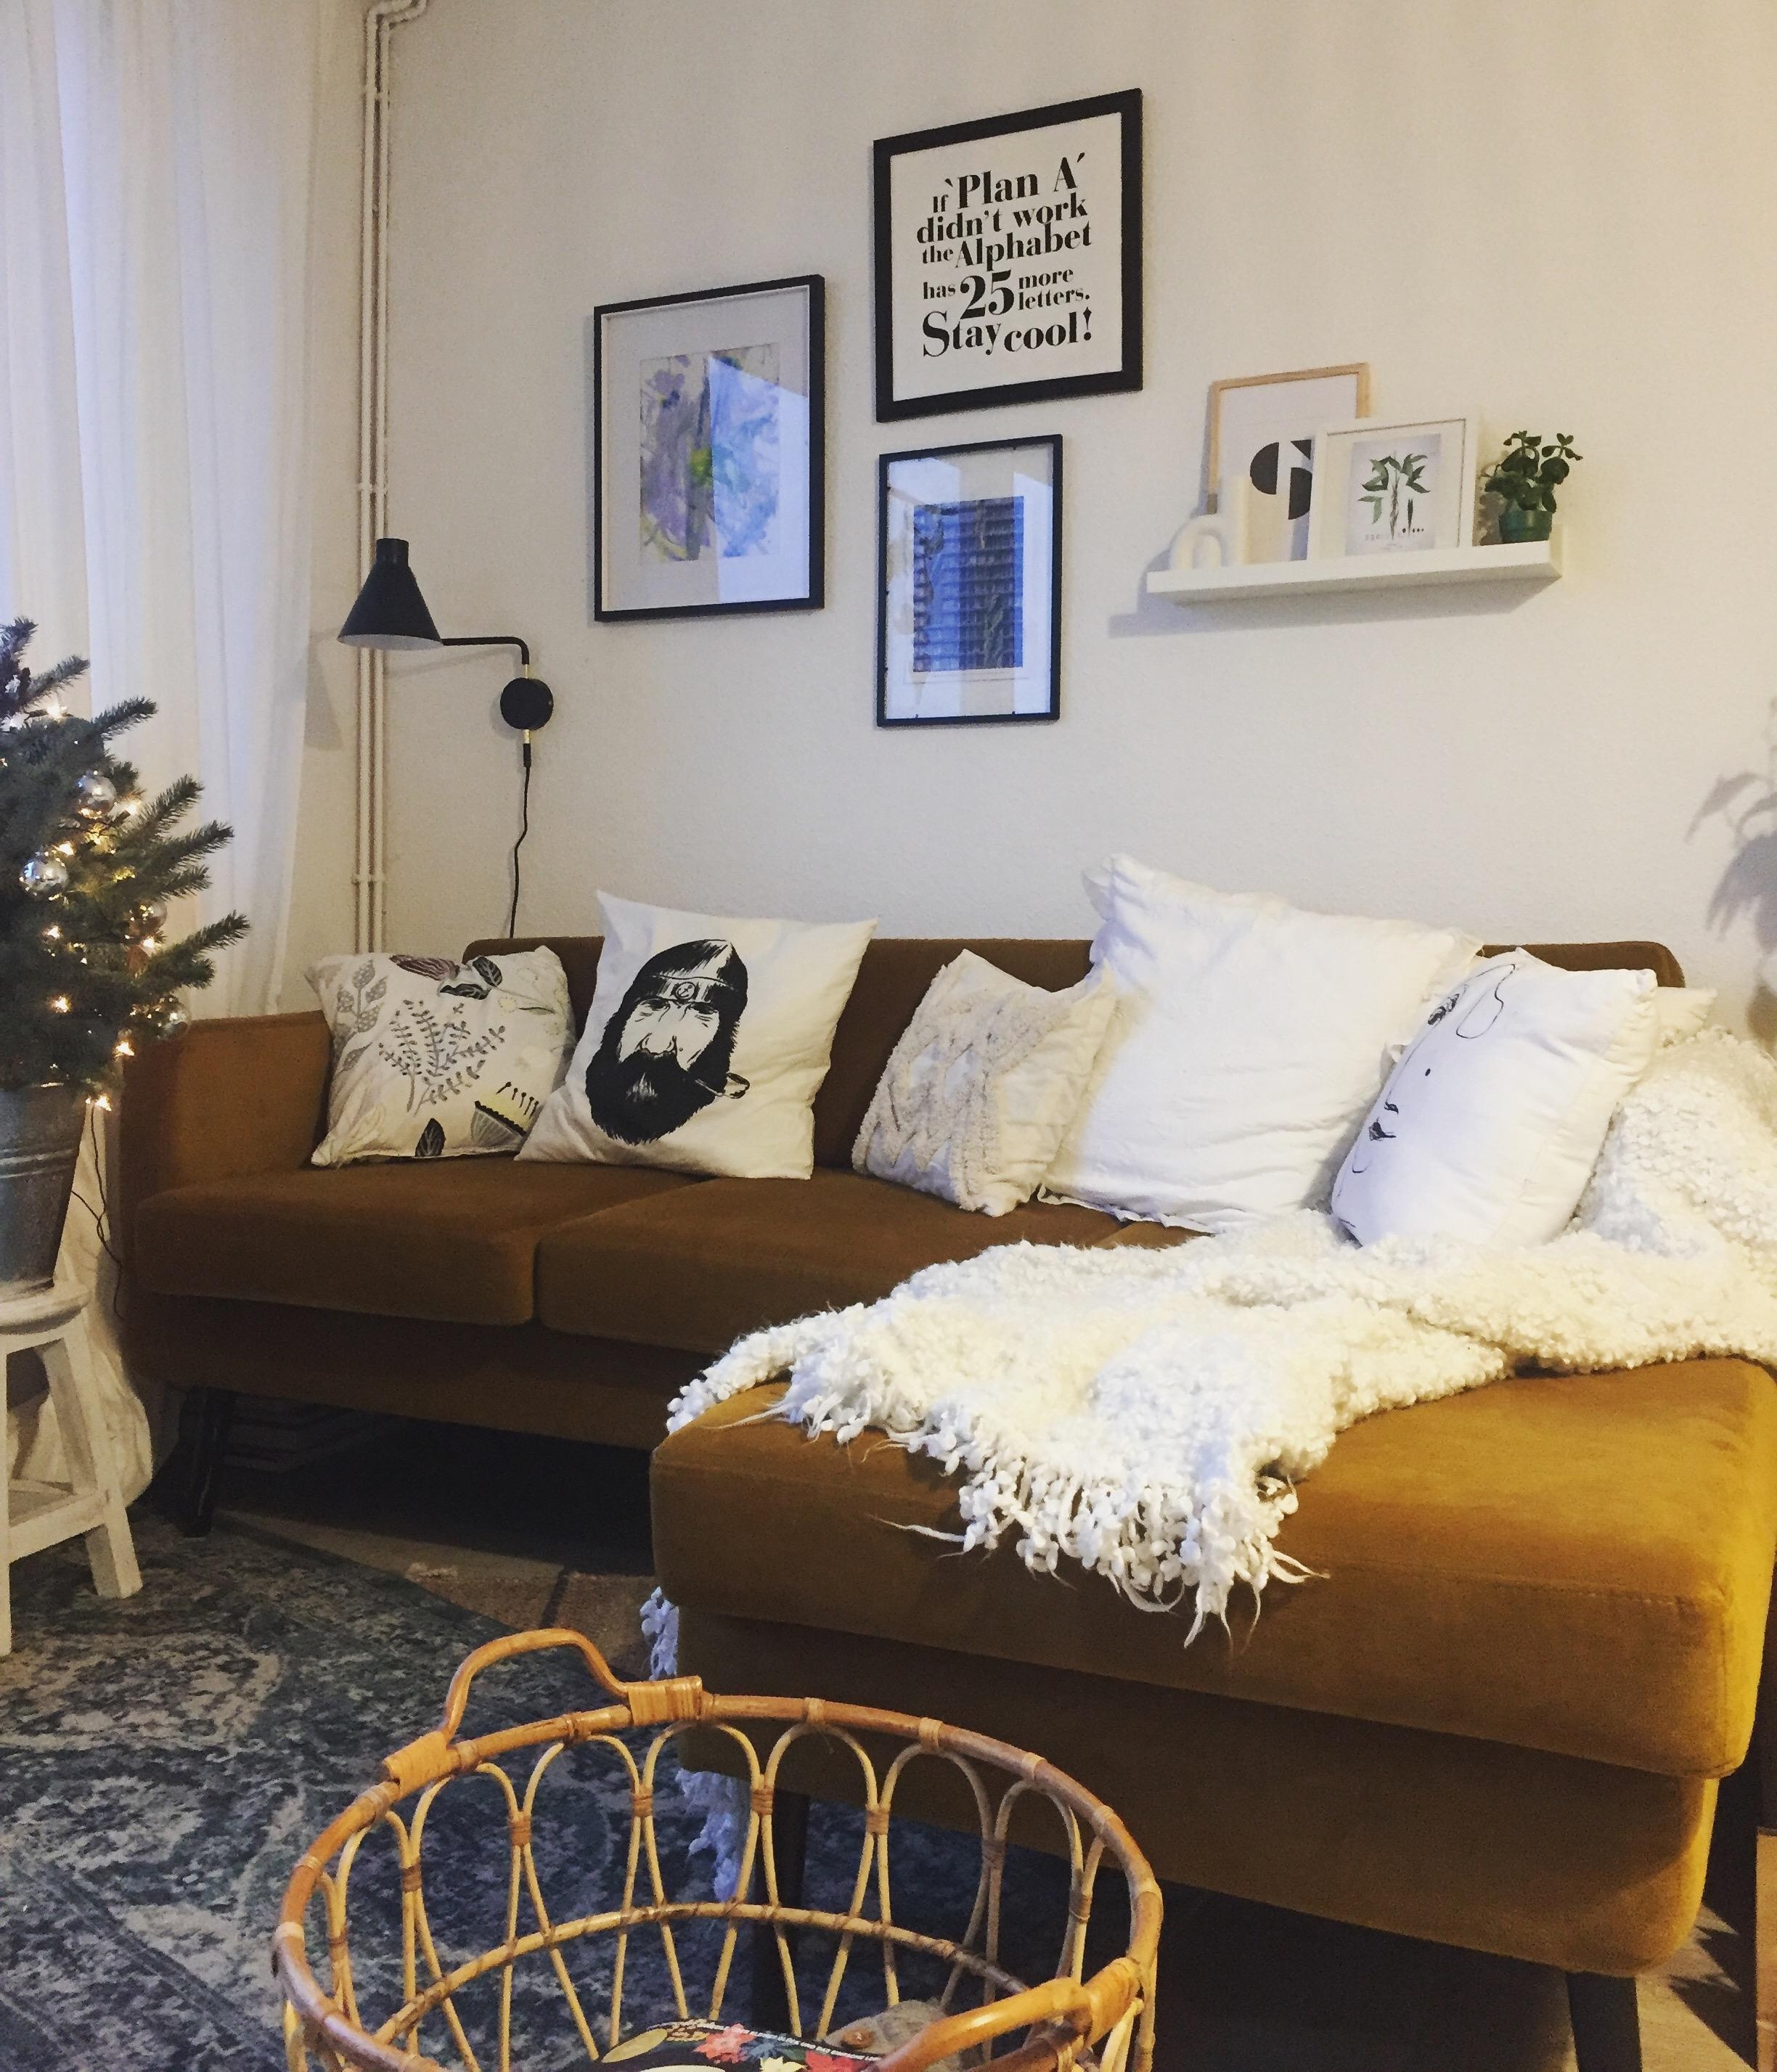 Ein kleiner Einblick in mein Wohnzimmer mit dem kleinen Weihnachtsbäumchen 💛

#couchstyle #interior #livingroom 